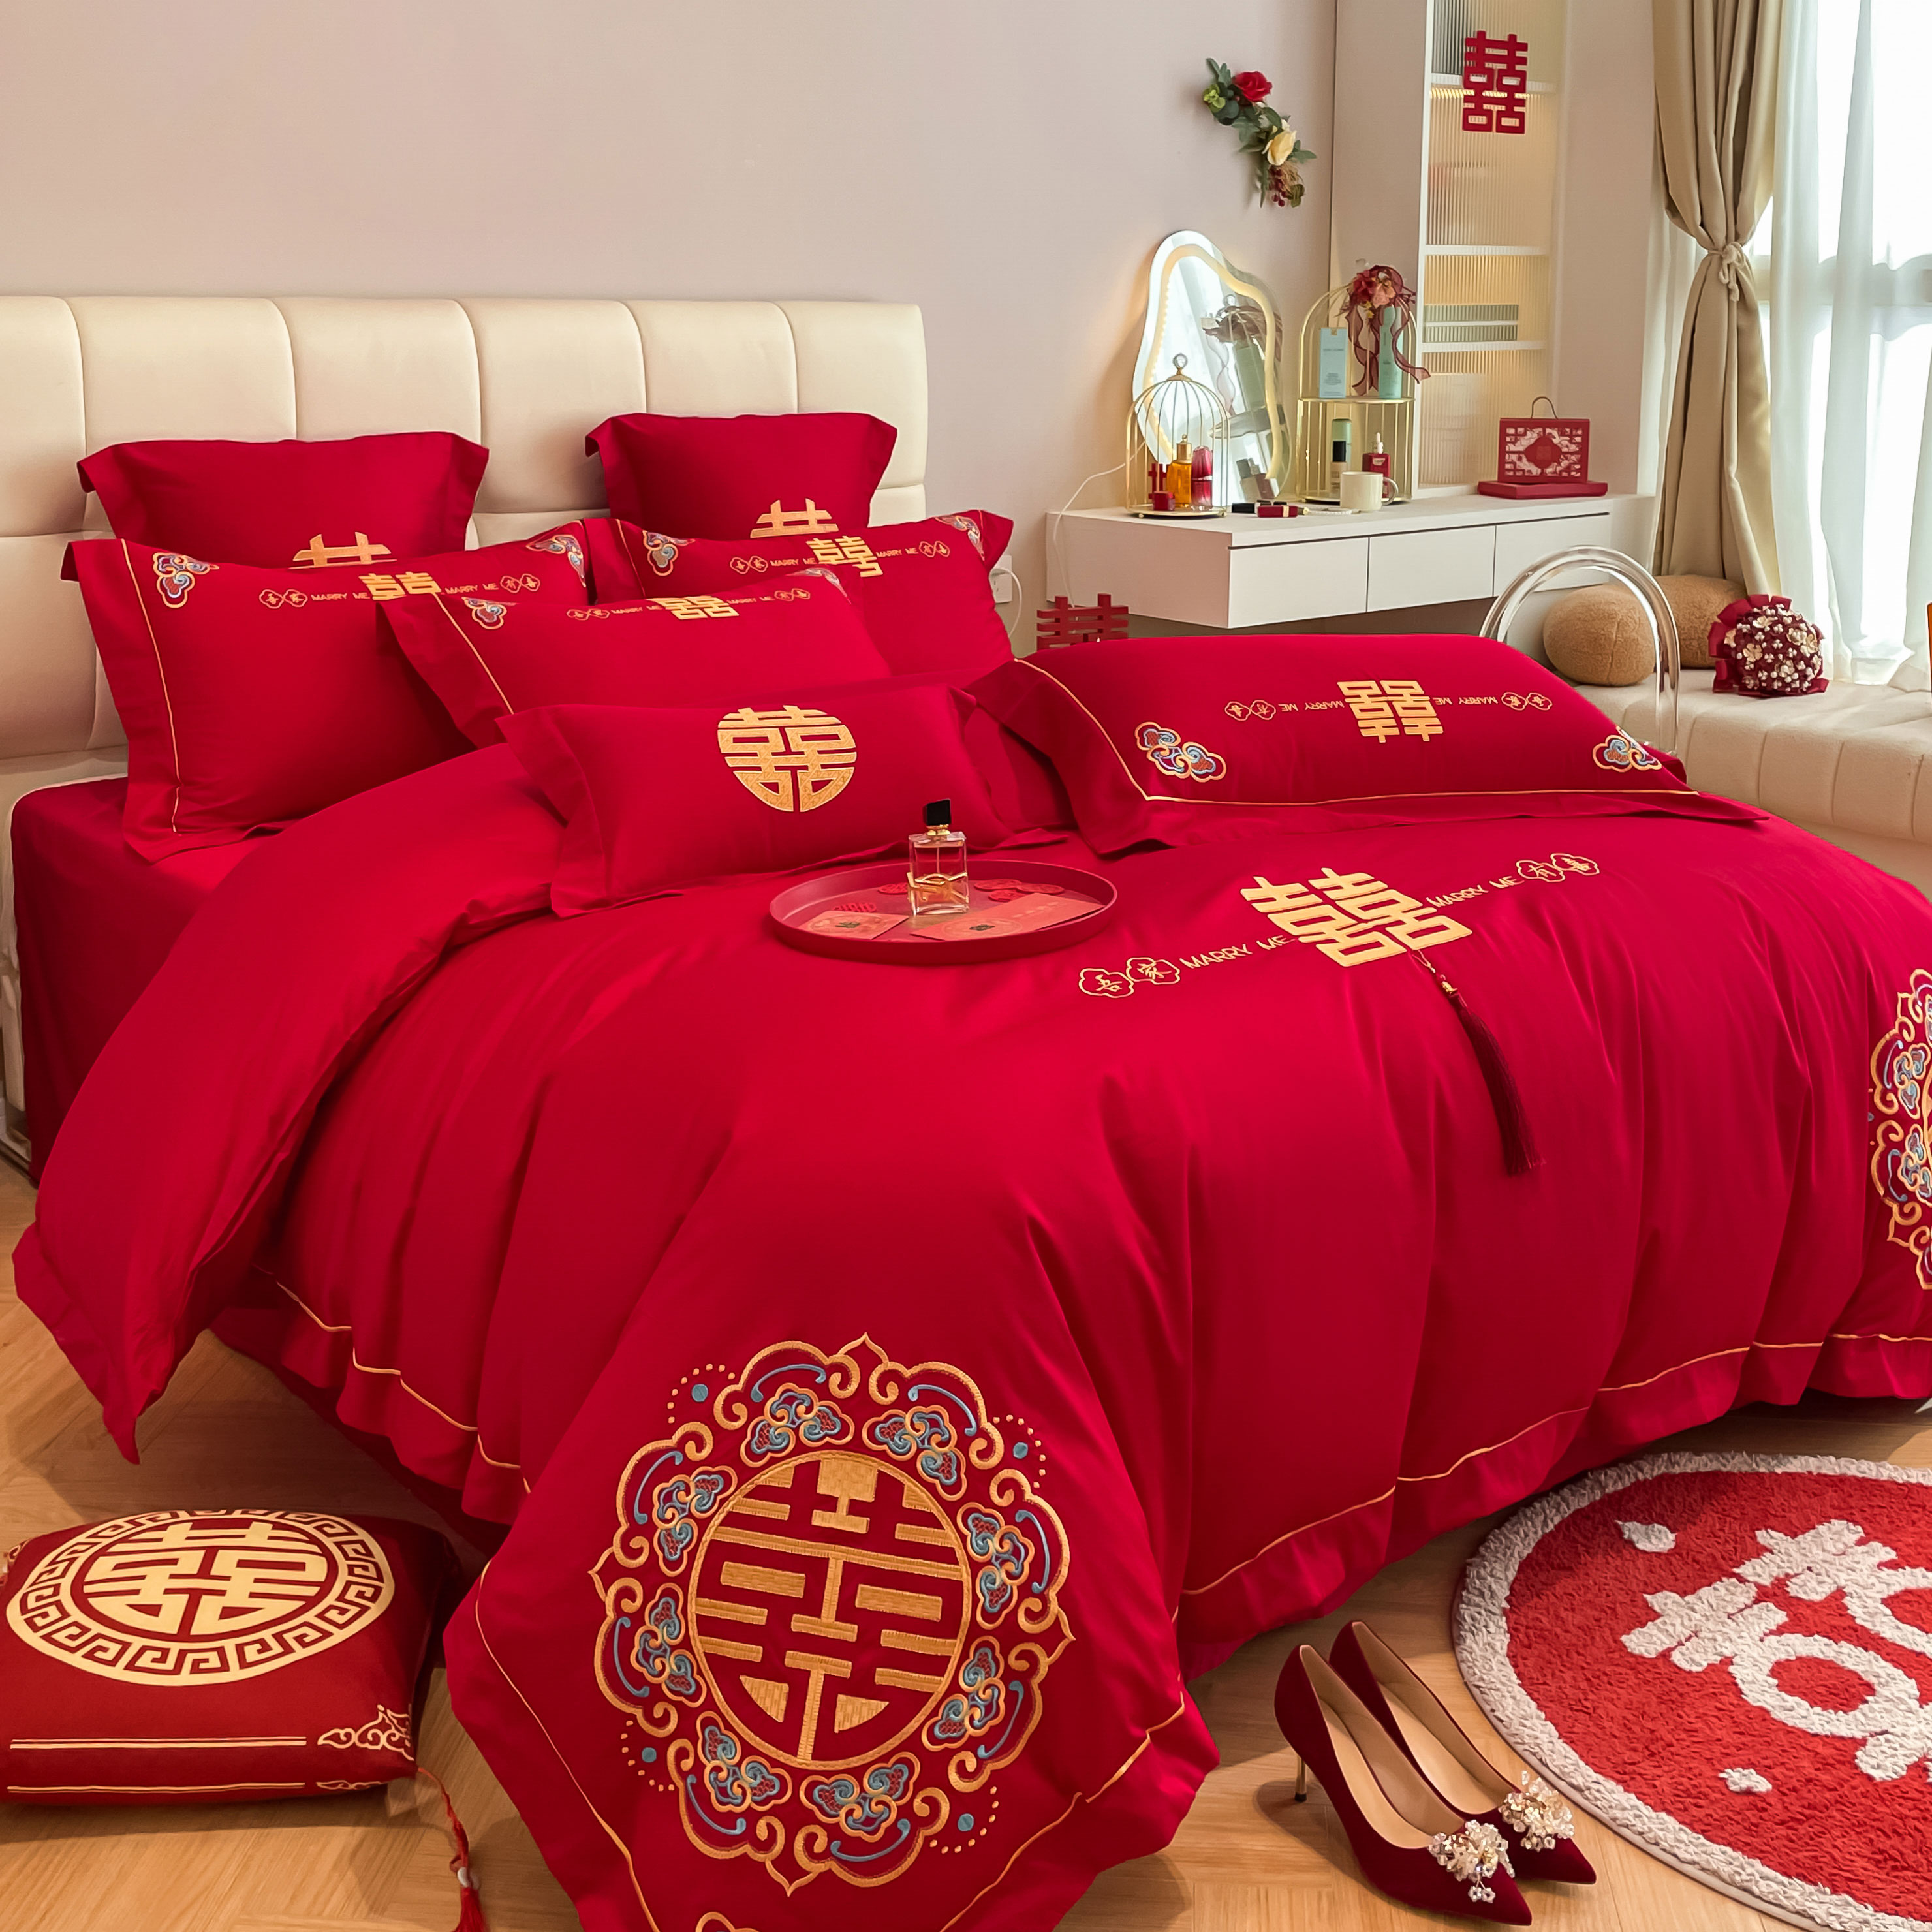 高档中式喜字结婚四件套大红色床单被套纯棉婚庆床上用品婚房喜被